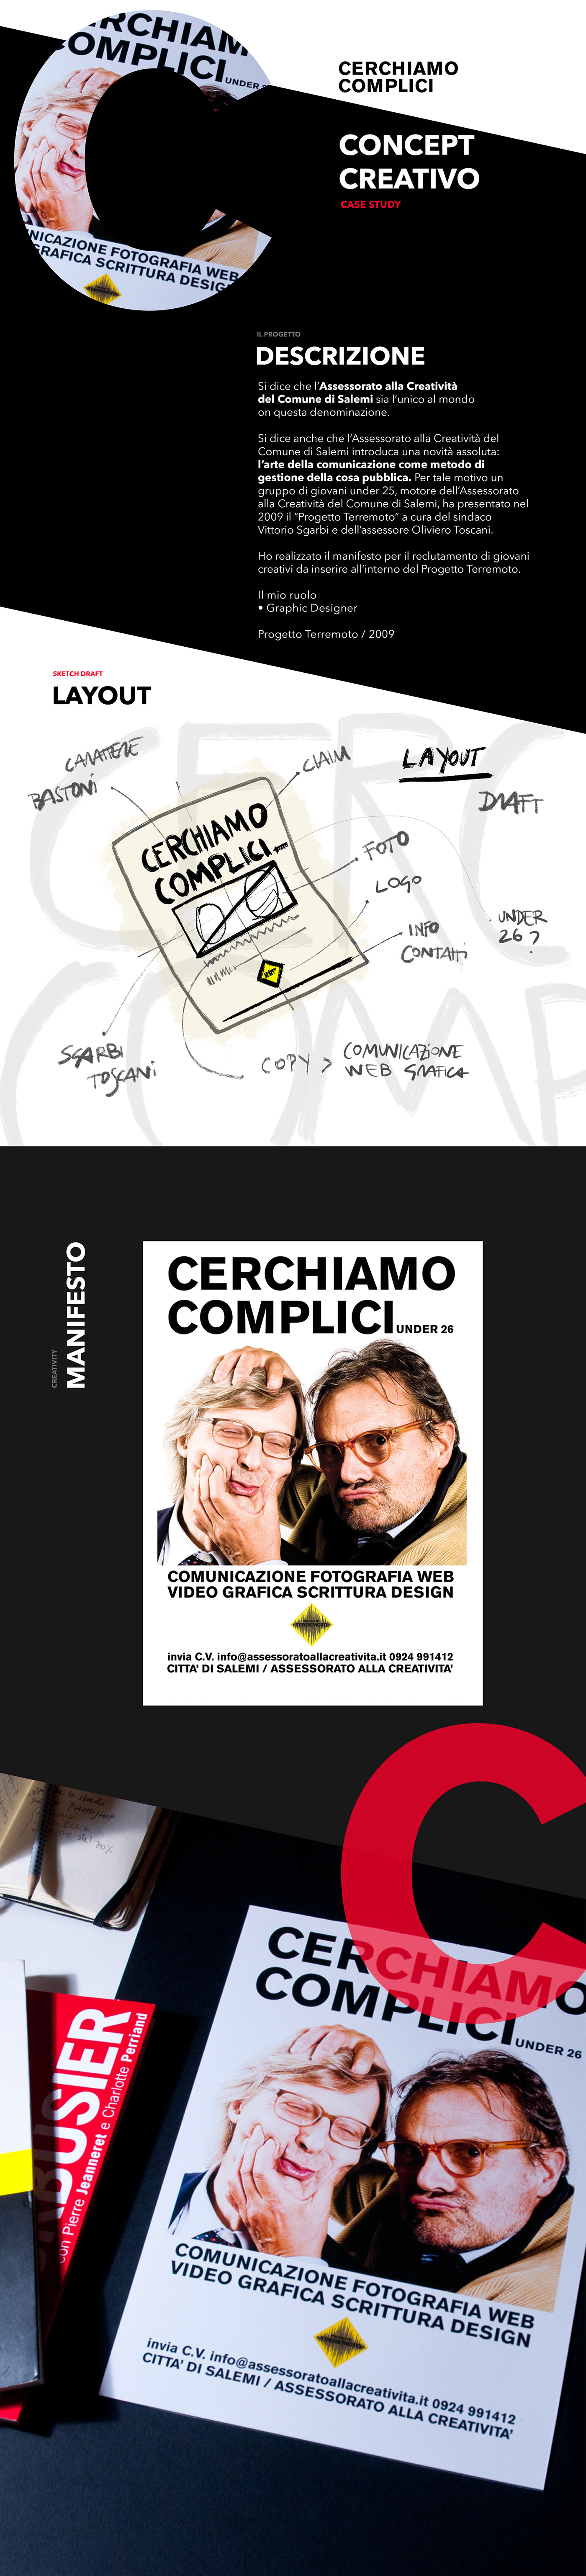 Cerchiamo Complici Filippo Maniscalco grafica graphic design  manifesto Oliviero Toscani Progetto Terremoto Vittorio Sgarbi